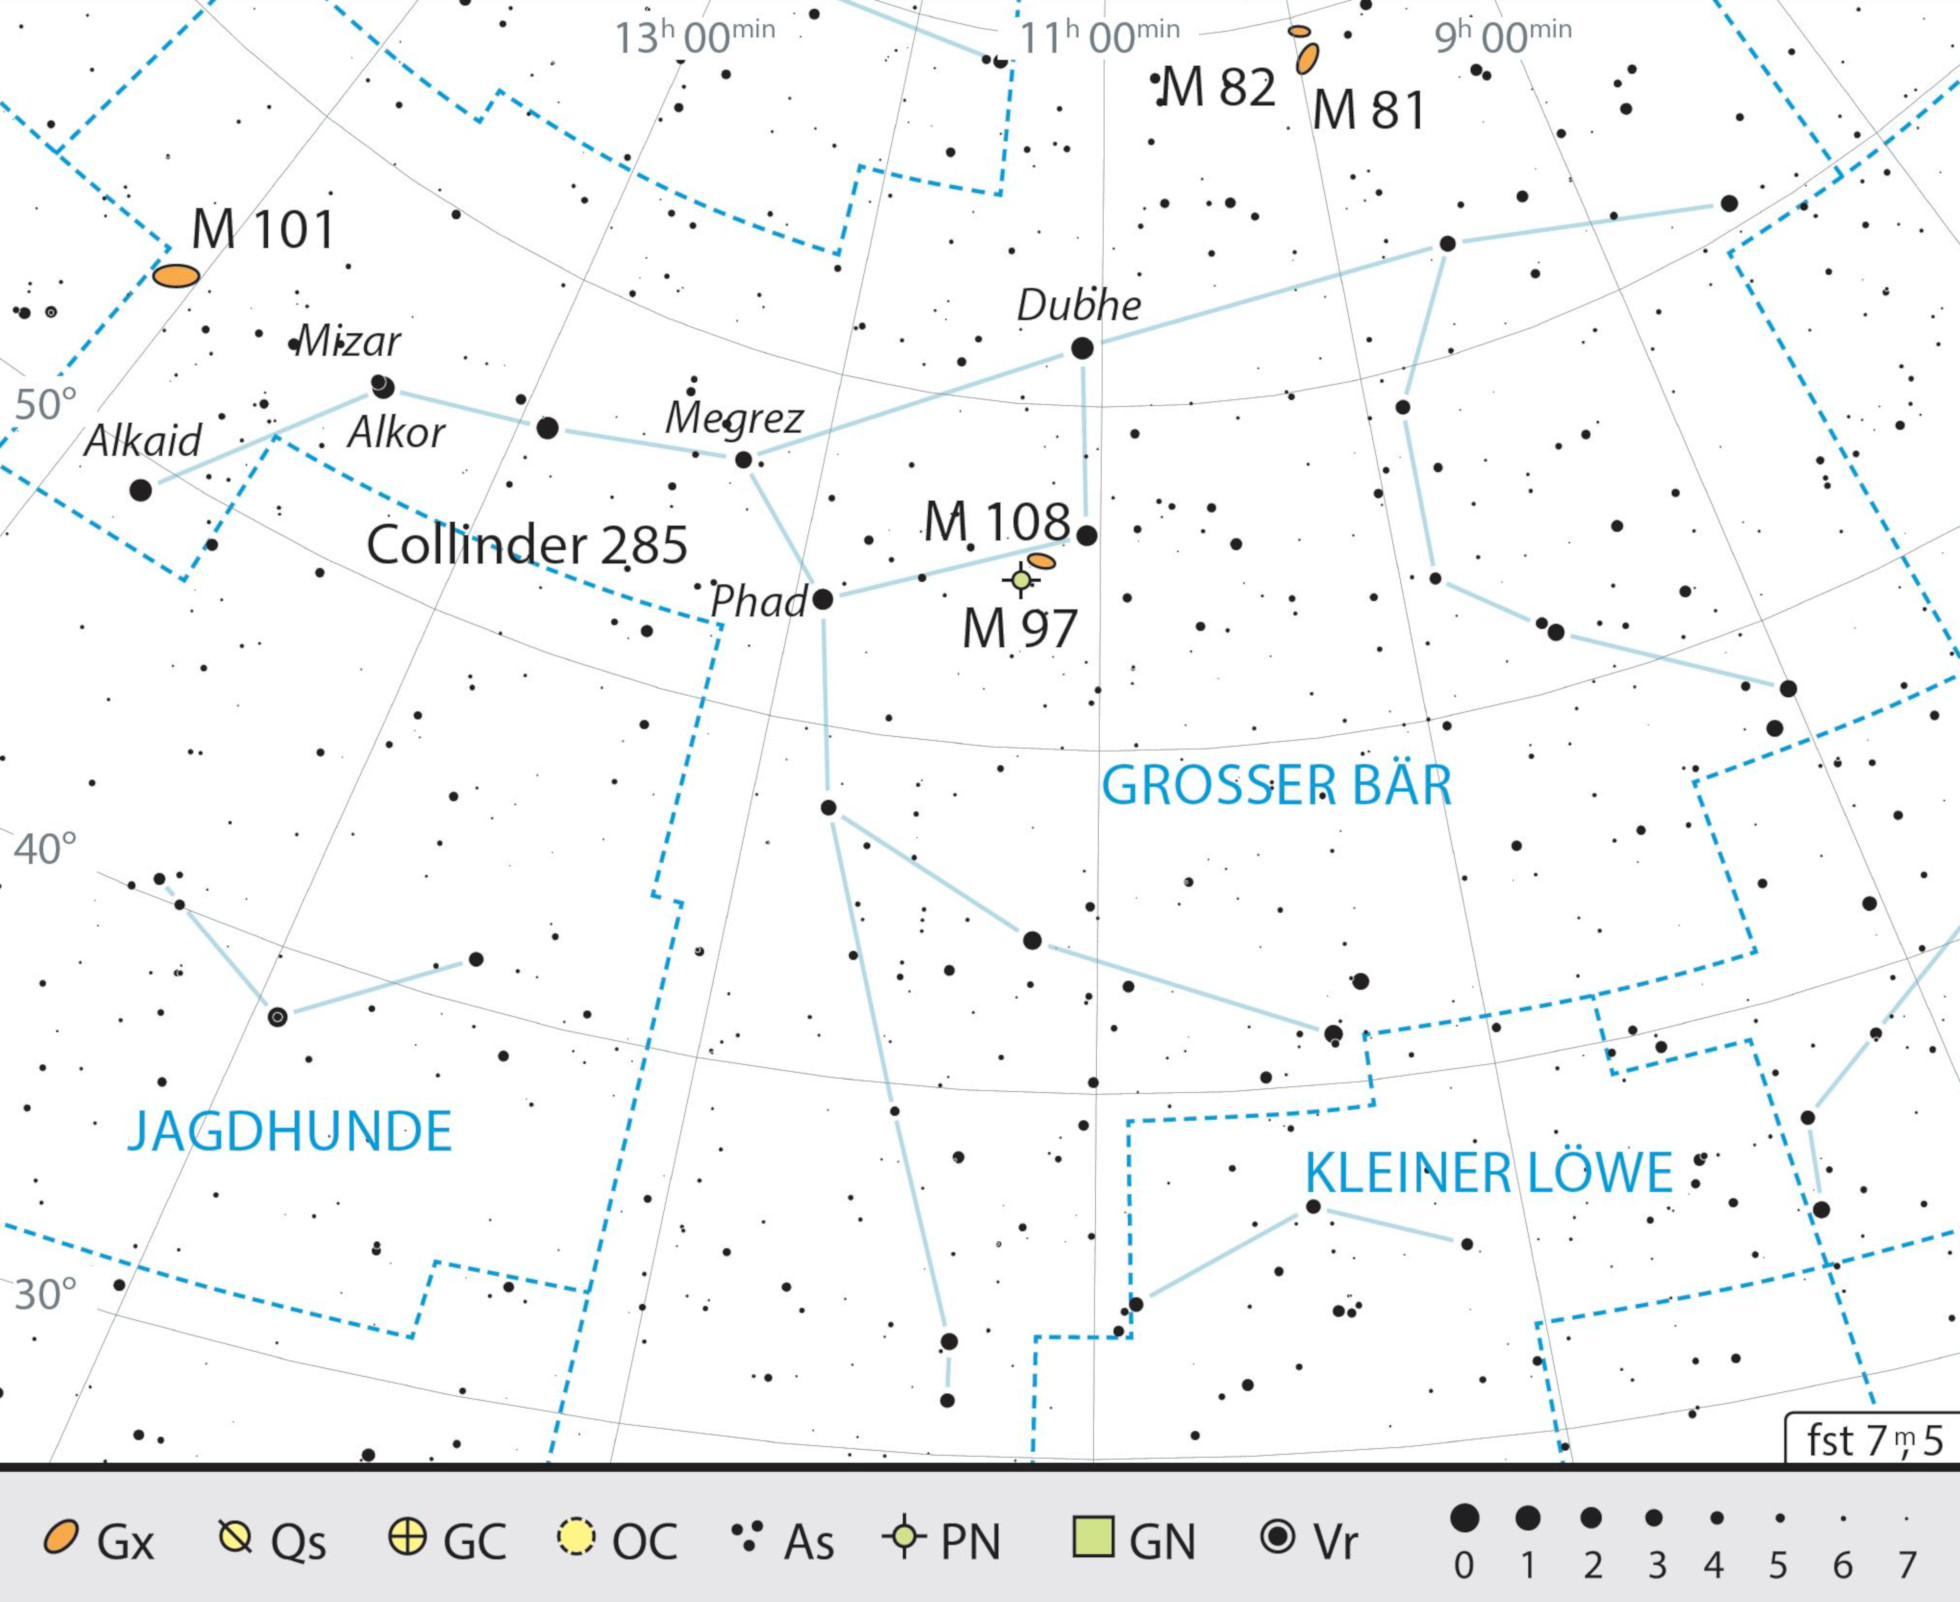 Översiktskarta över stjärnbilden Stora björnen med rekommendationer för observation. J. Scholten